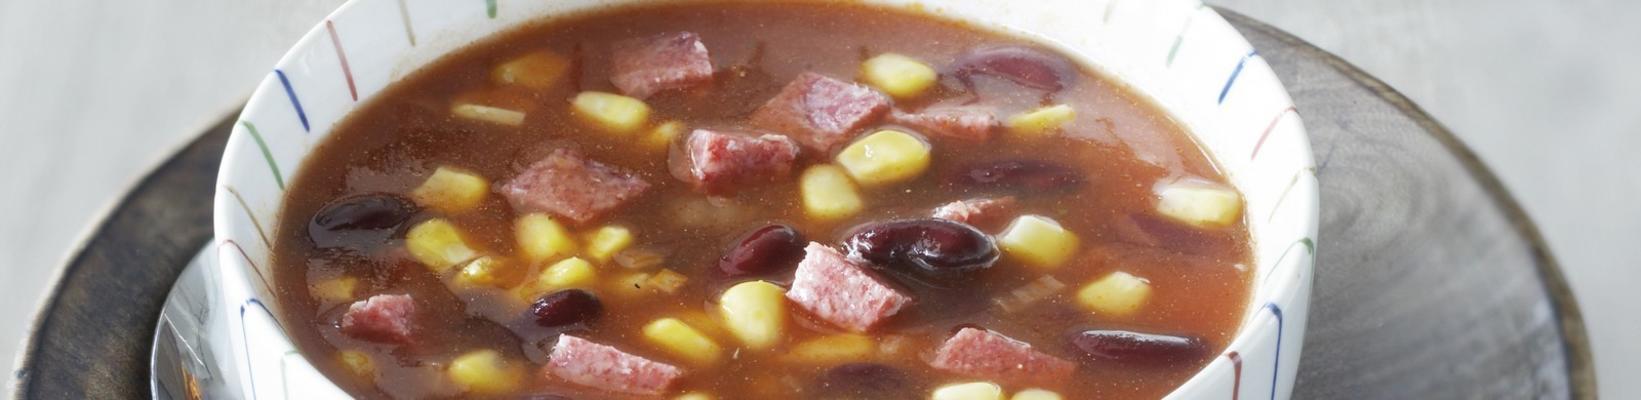 Mexican bean corn soup